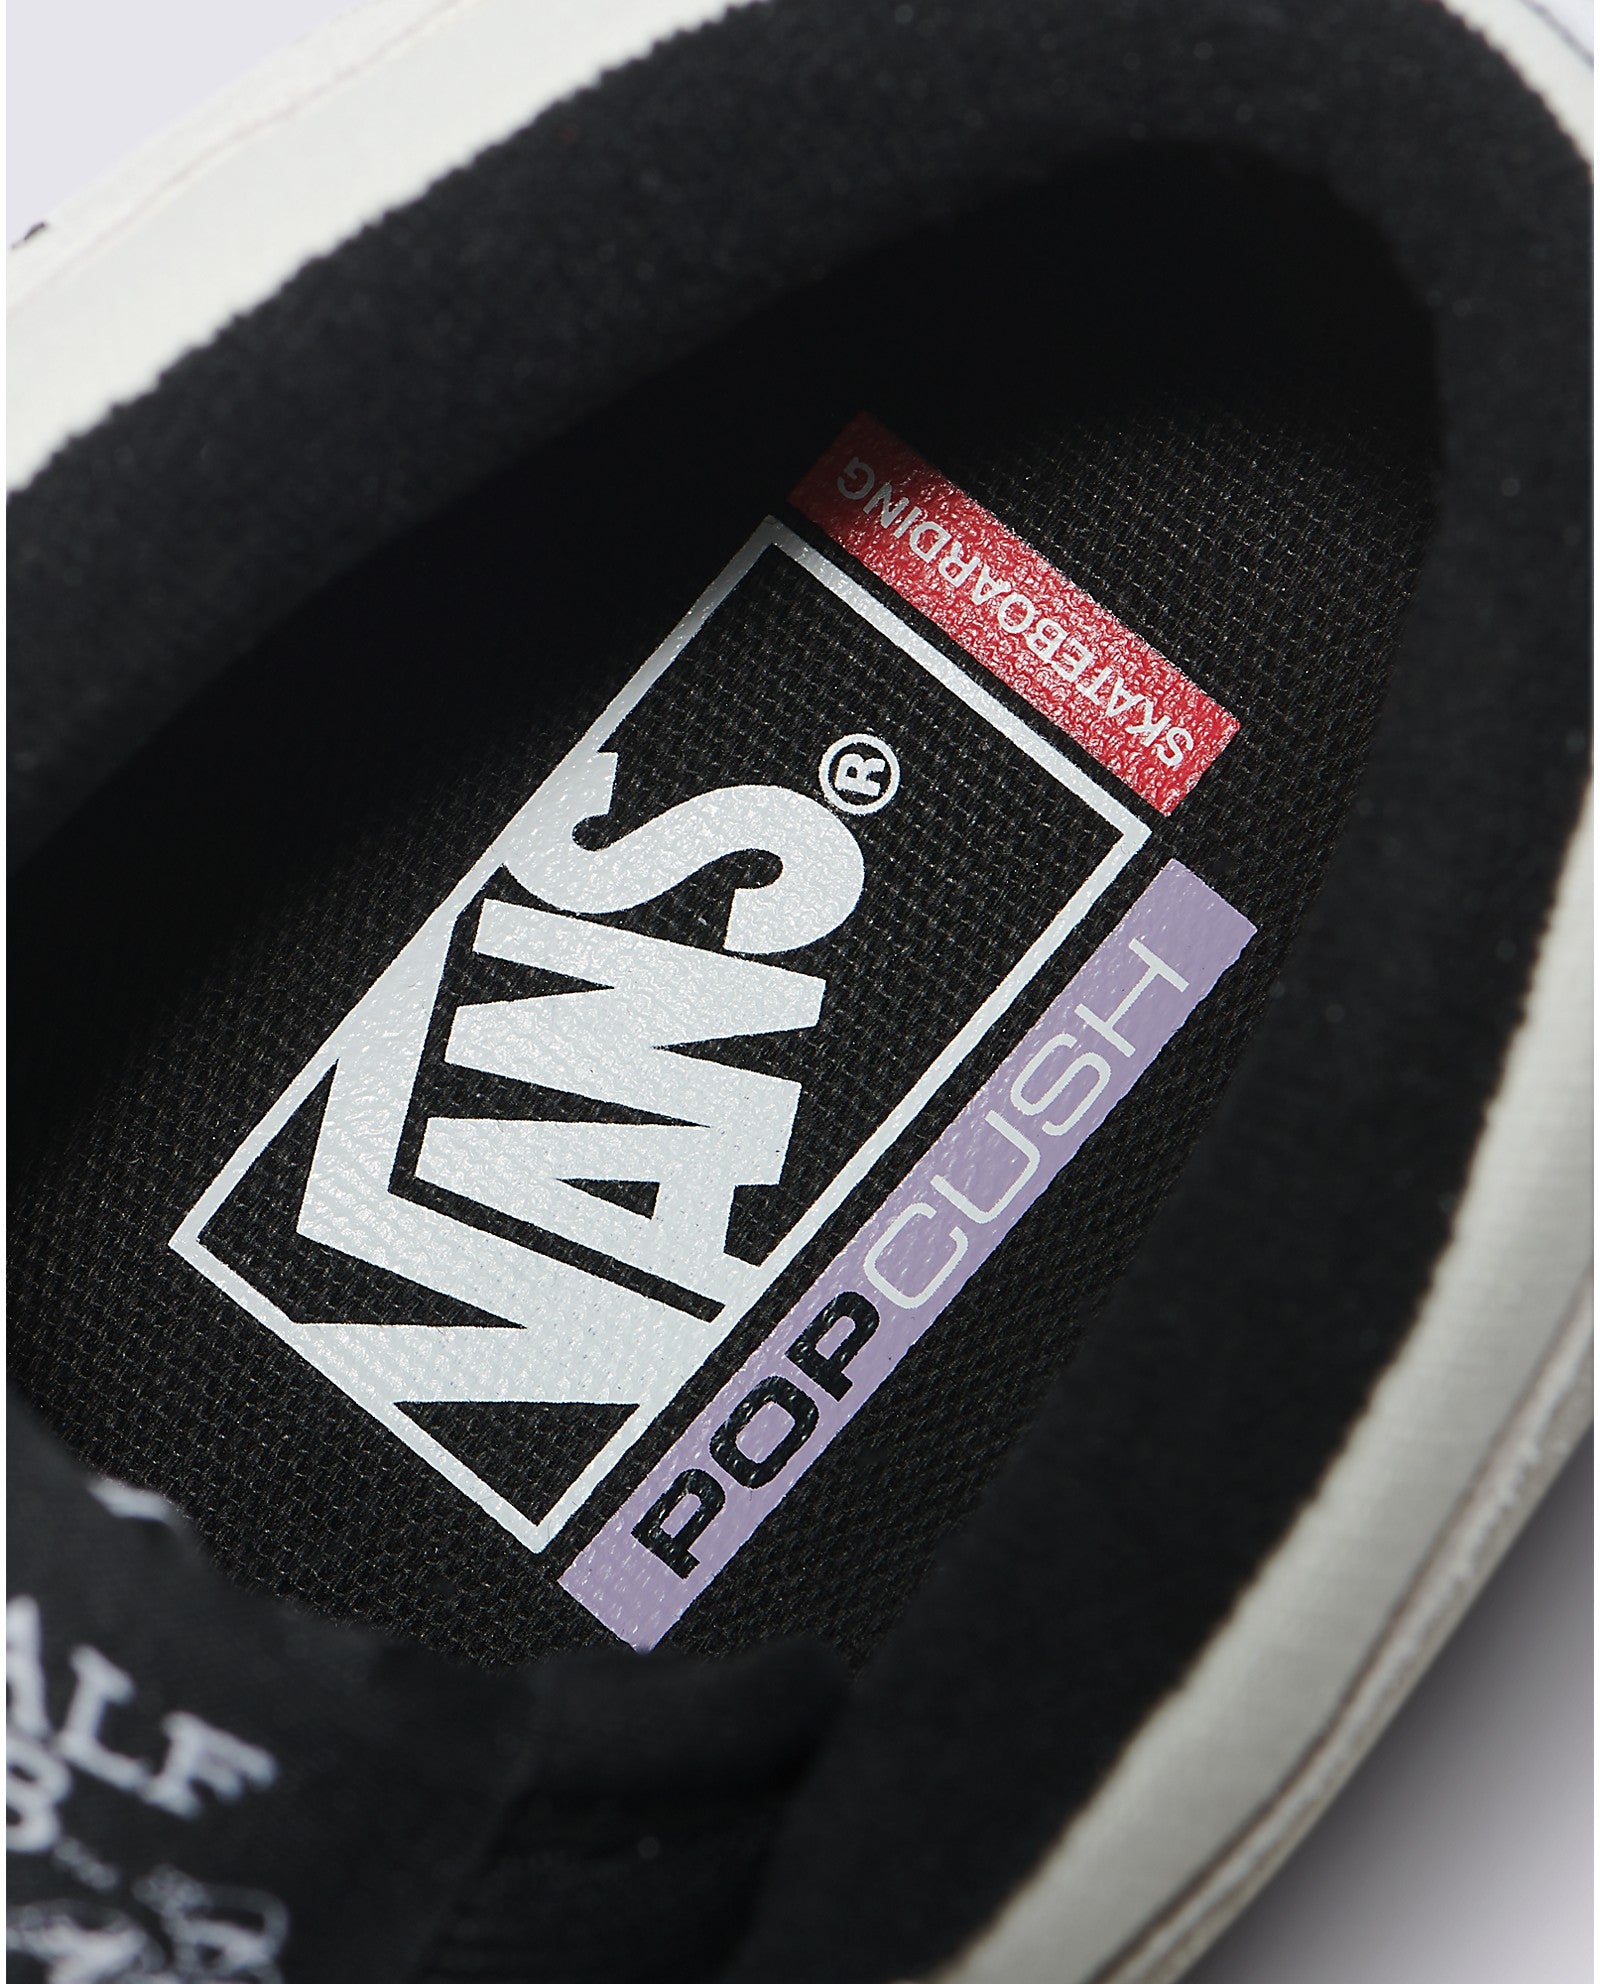 White/Black Vans Skate Half Cab Skate Shoe Detail